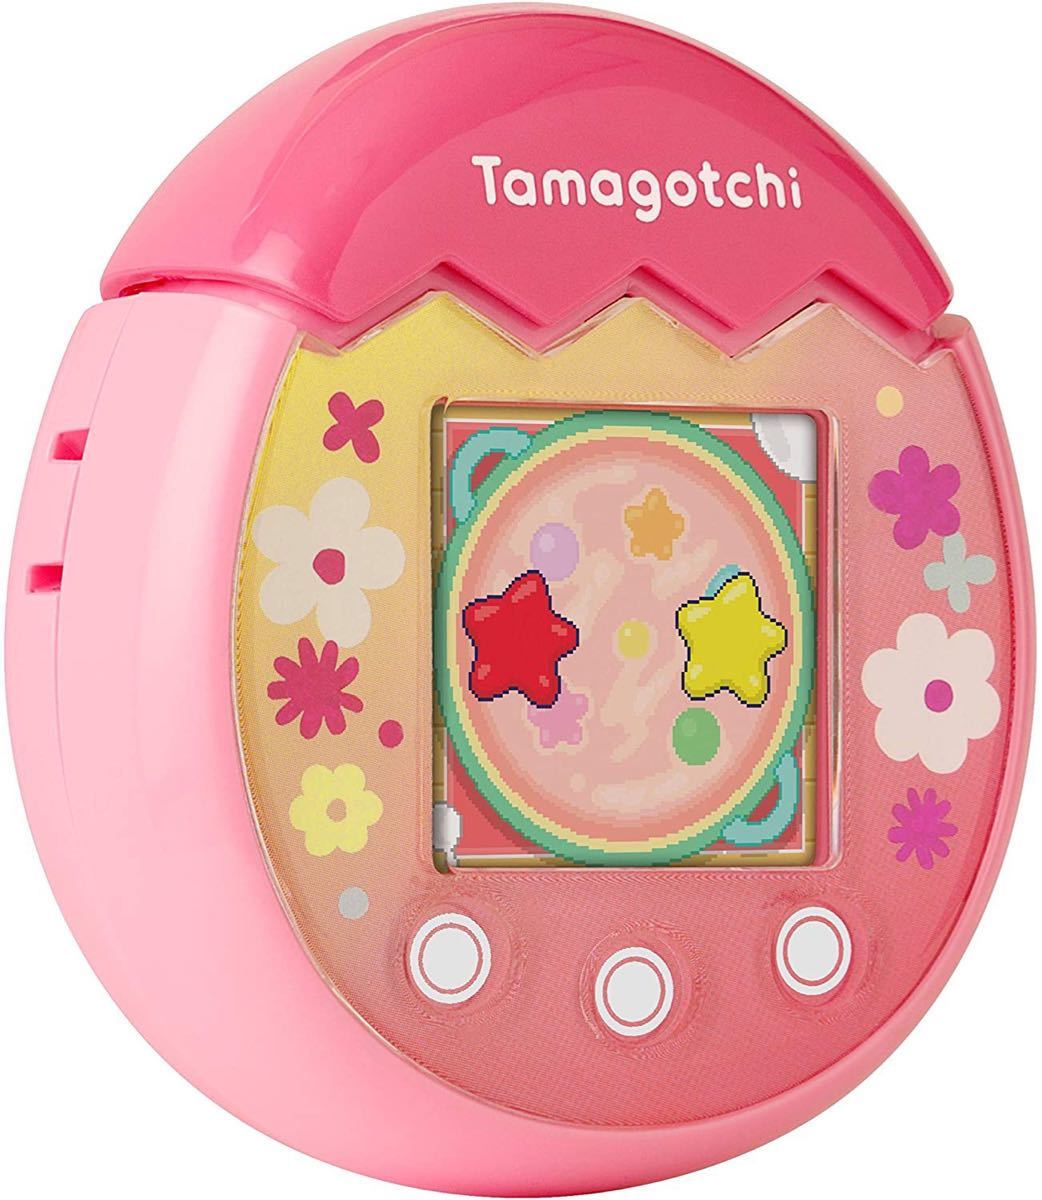 たまごっち ピックス ピンク 日本未発売 新品 tamagotchi pix